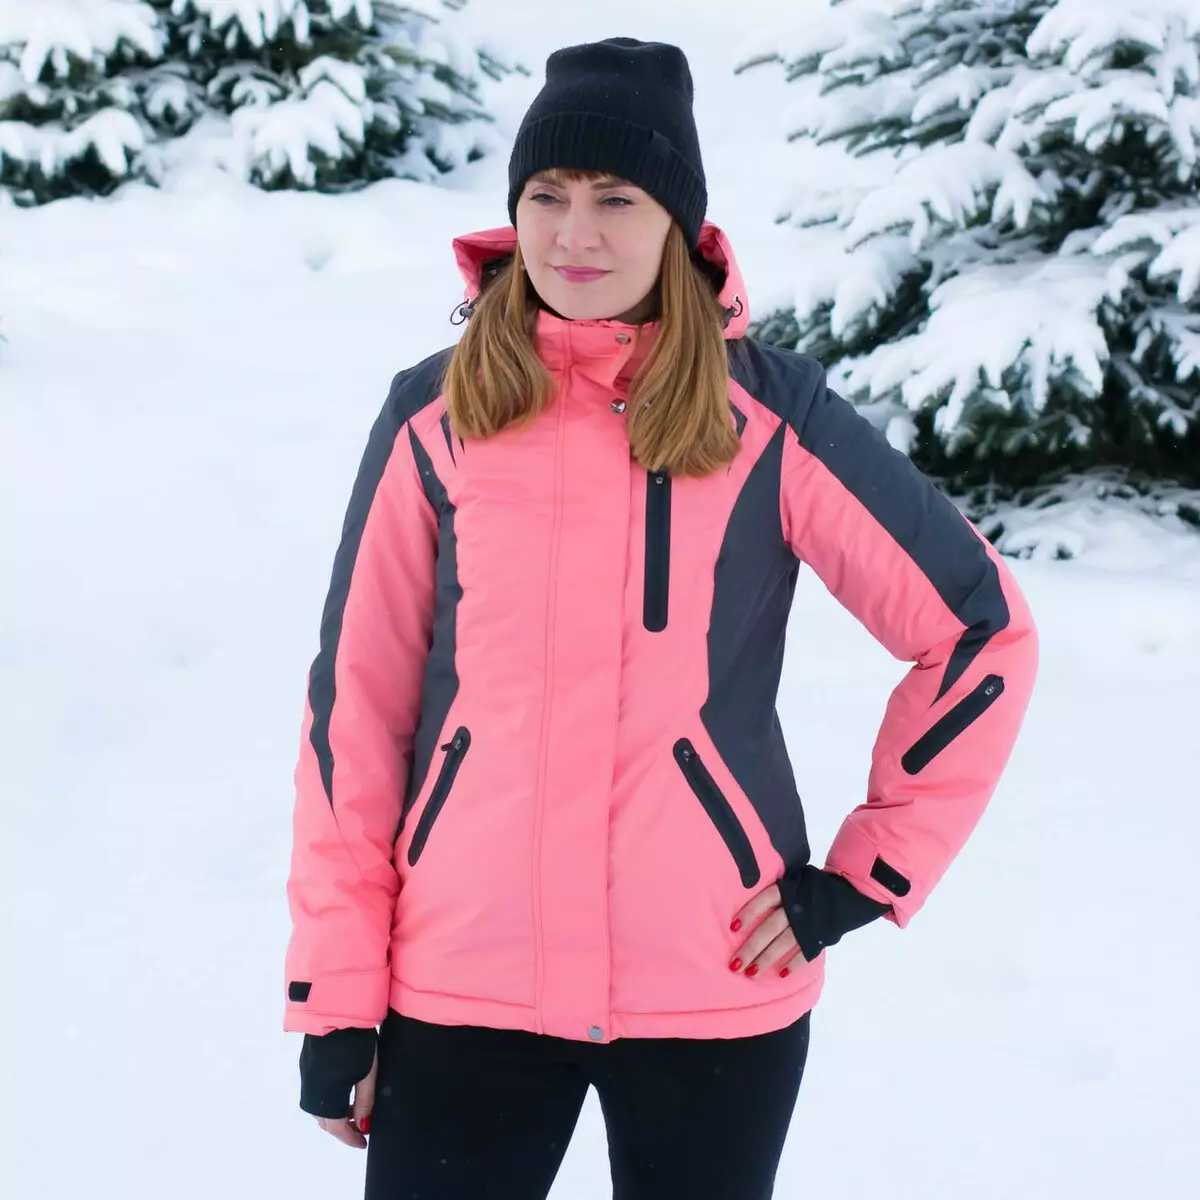 Áo khoác trượt tuyết: Áo khoác mùa đông dành cho nữ cho trượt tuyết xuyên quốc gia, áo khoác trẻ em ấm áp và người lớn. Làm thế nào để chọn để trượt băng? 20201_36